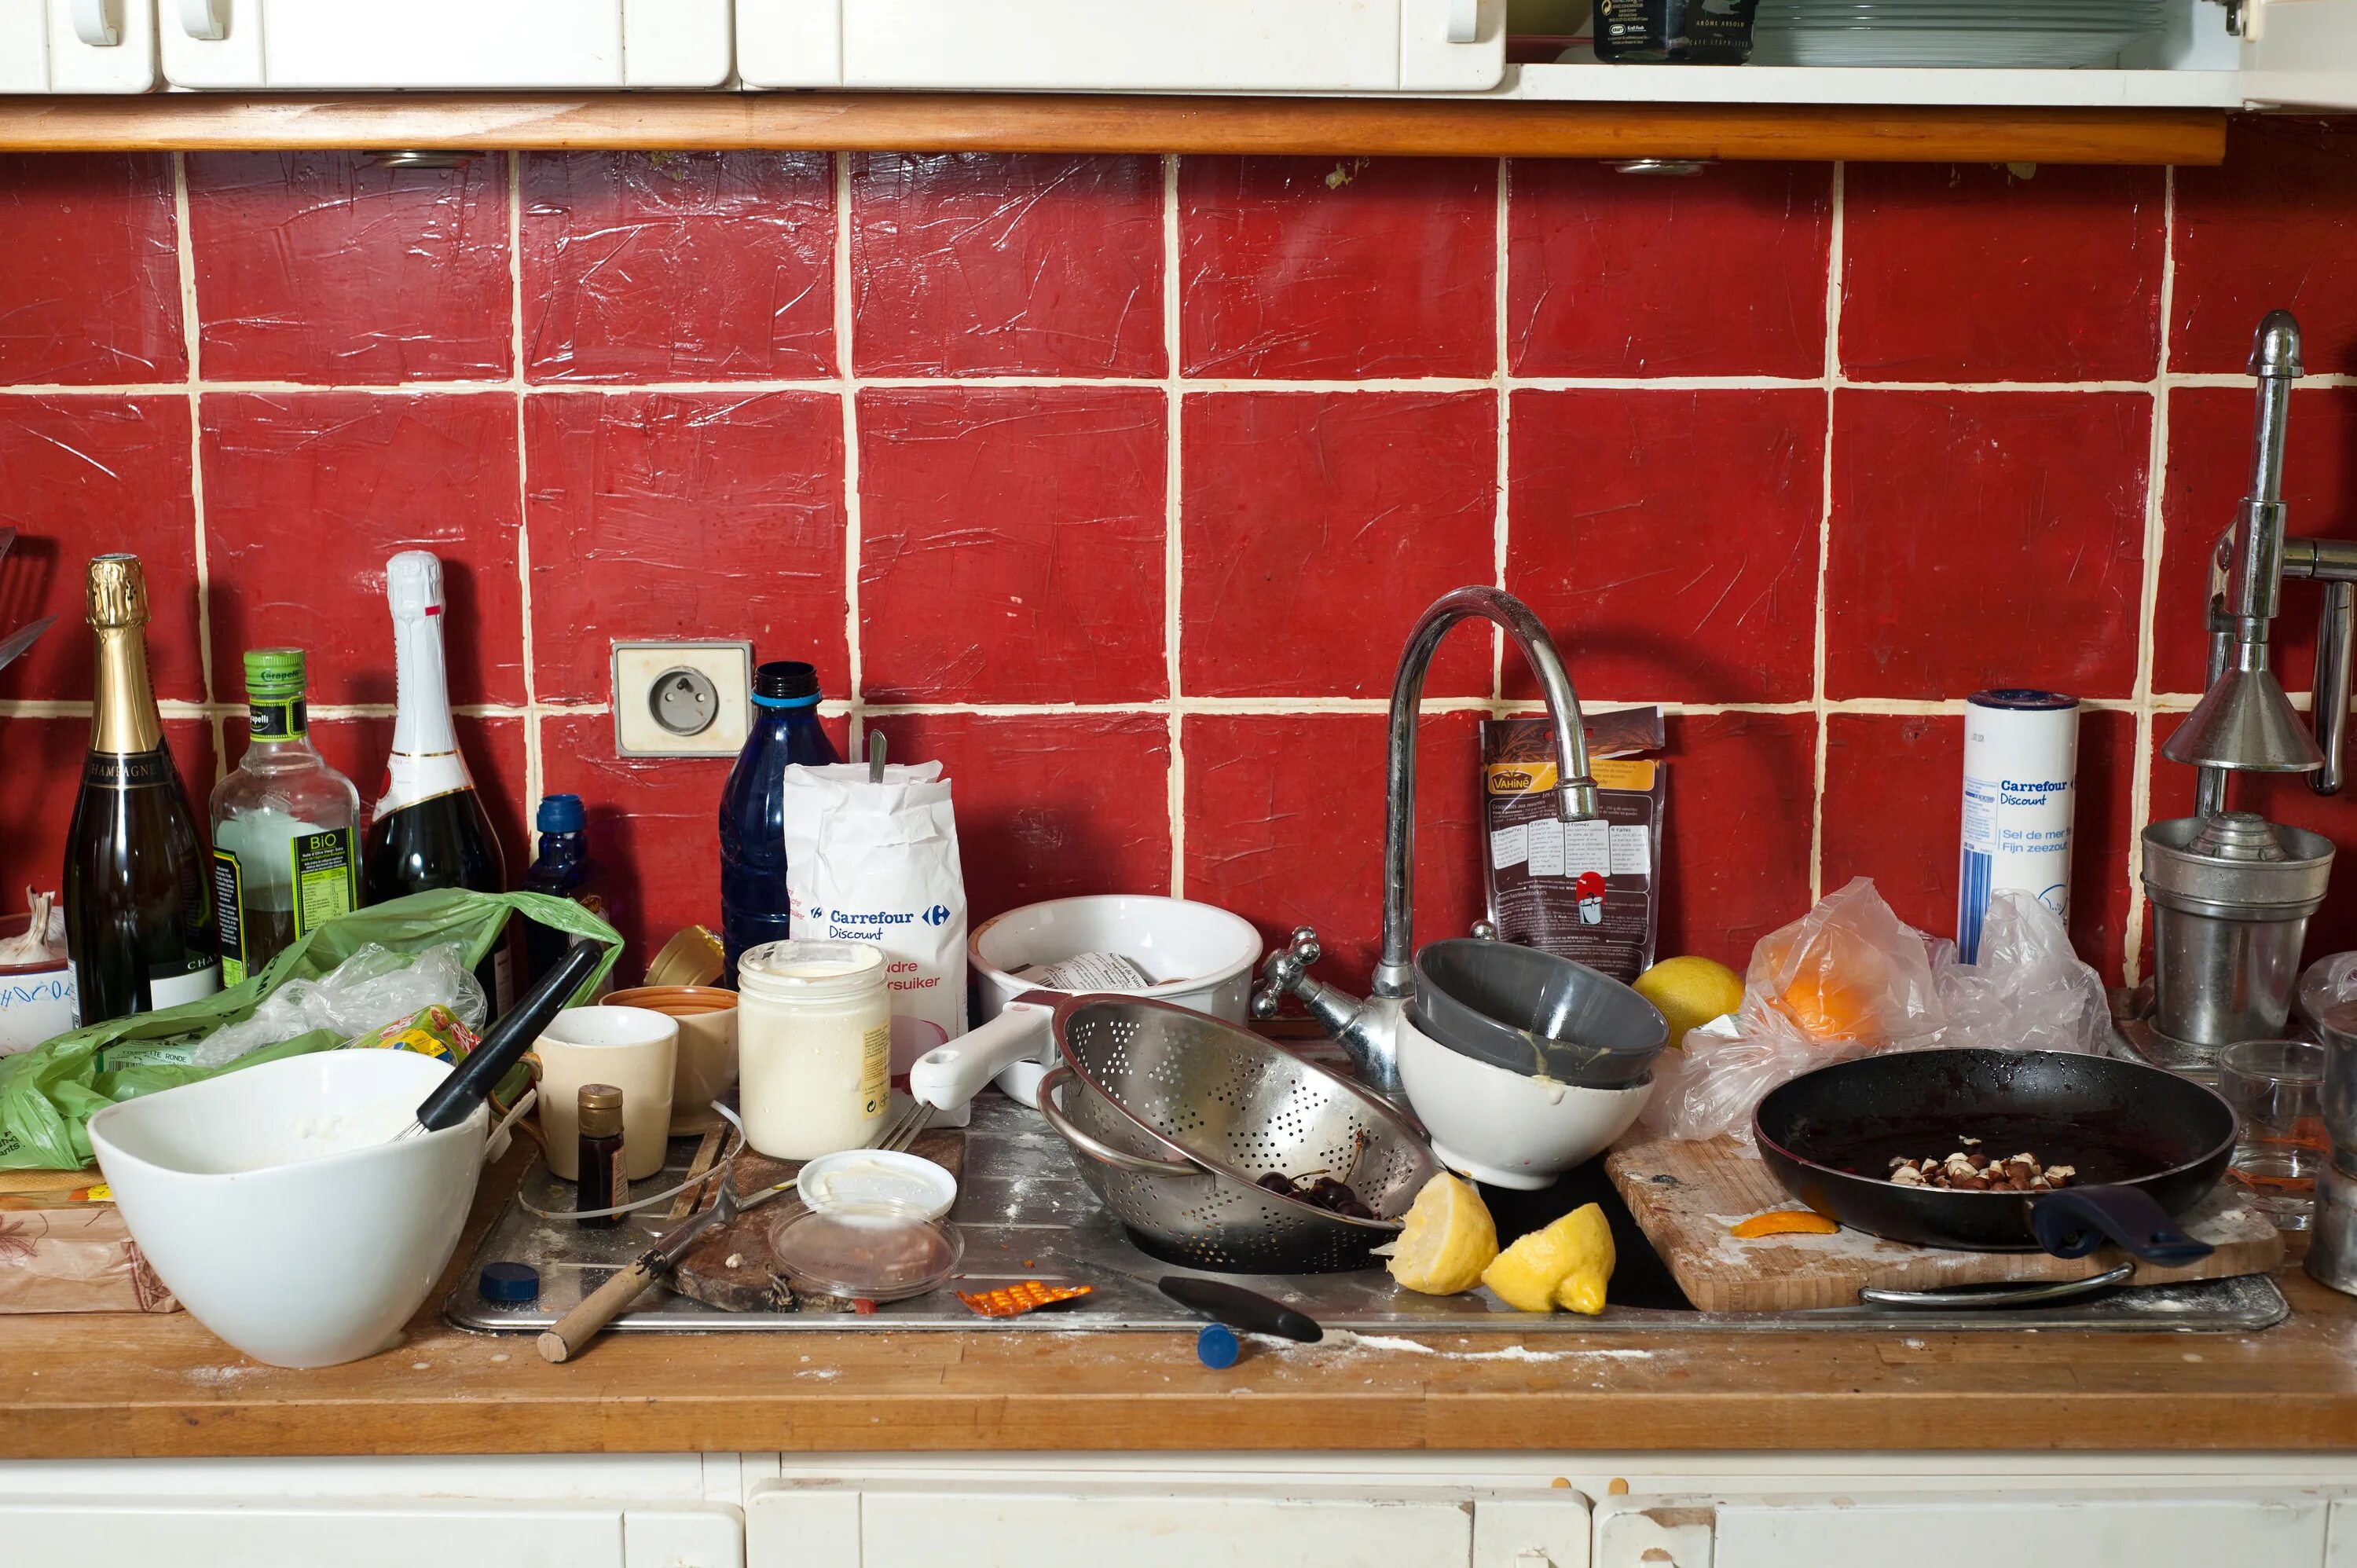 Грязная посуда на кухне. Кухня с немытой посудой. Бардак на кухне. Грязная кухня. Dirty dishes